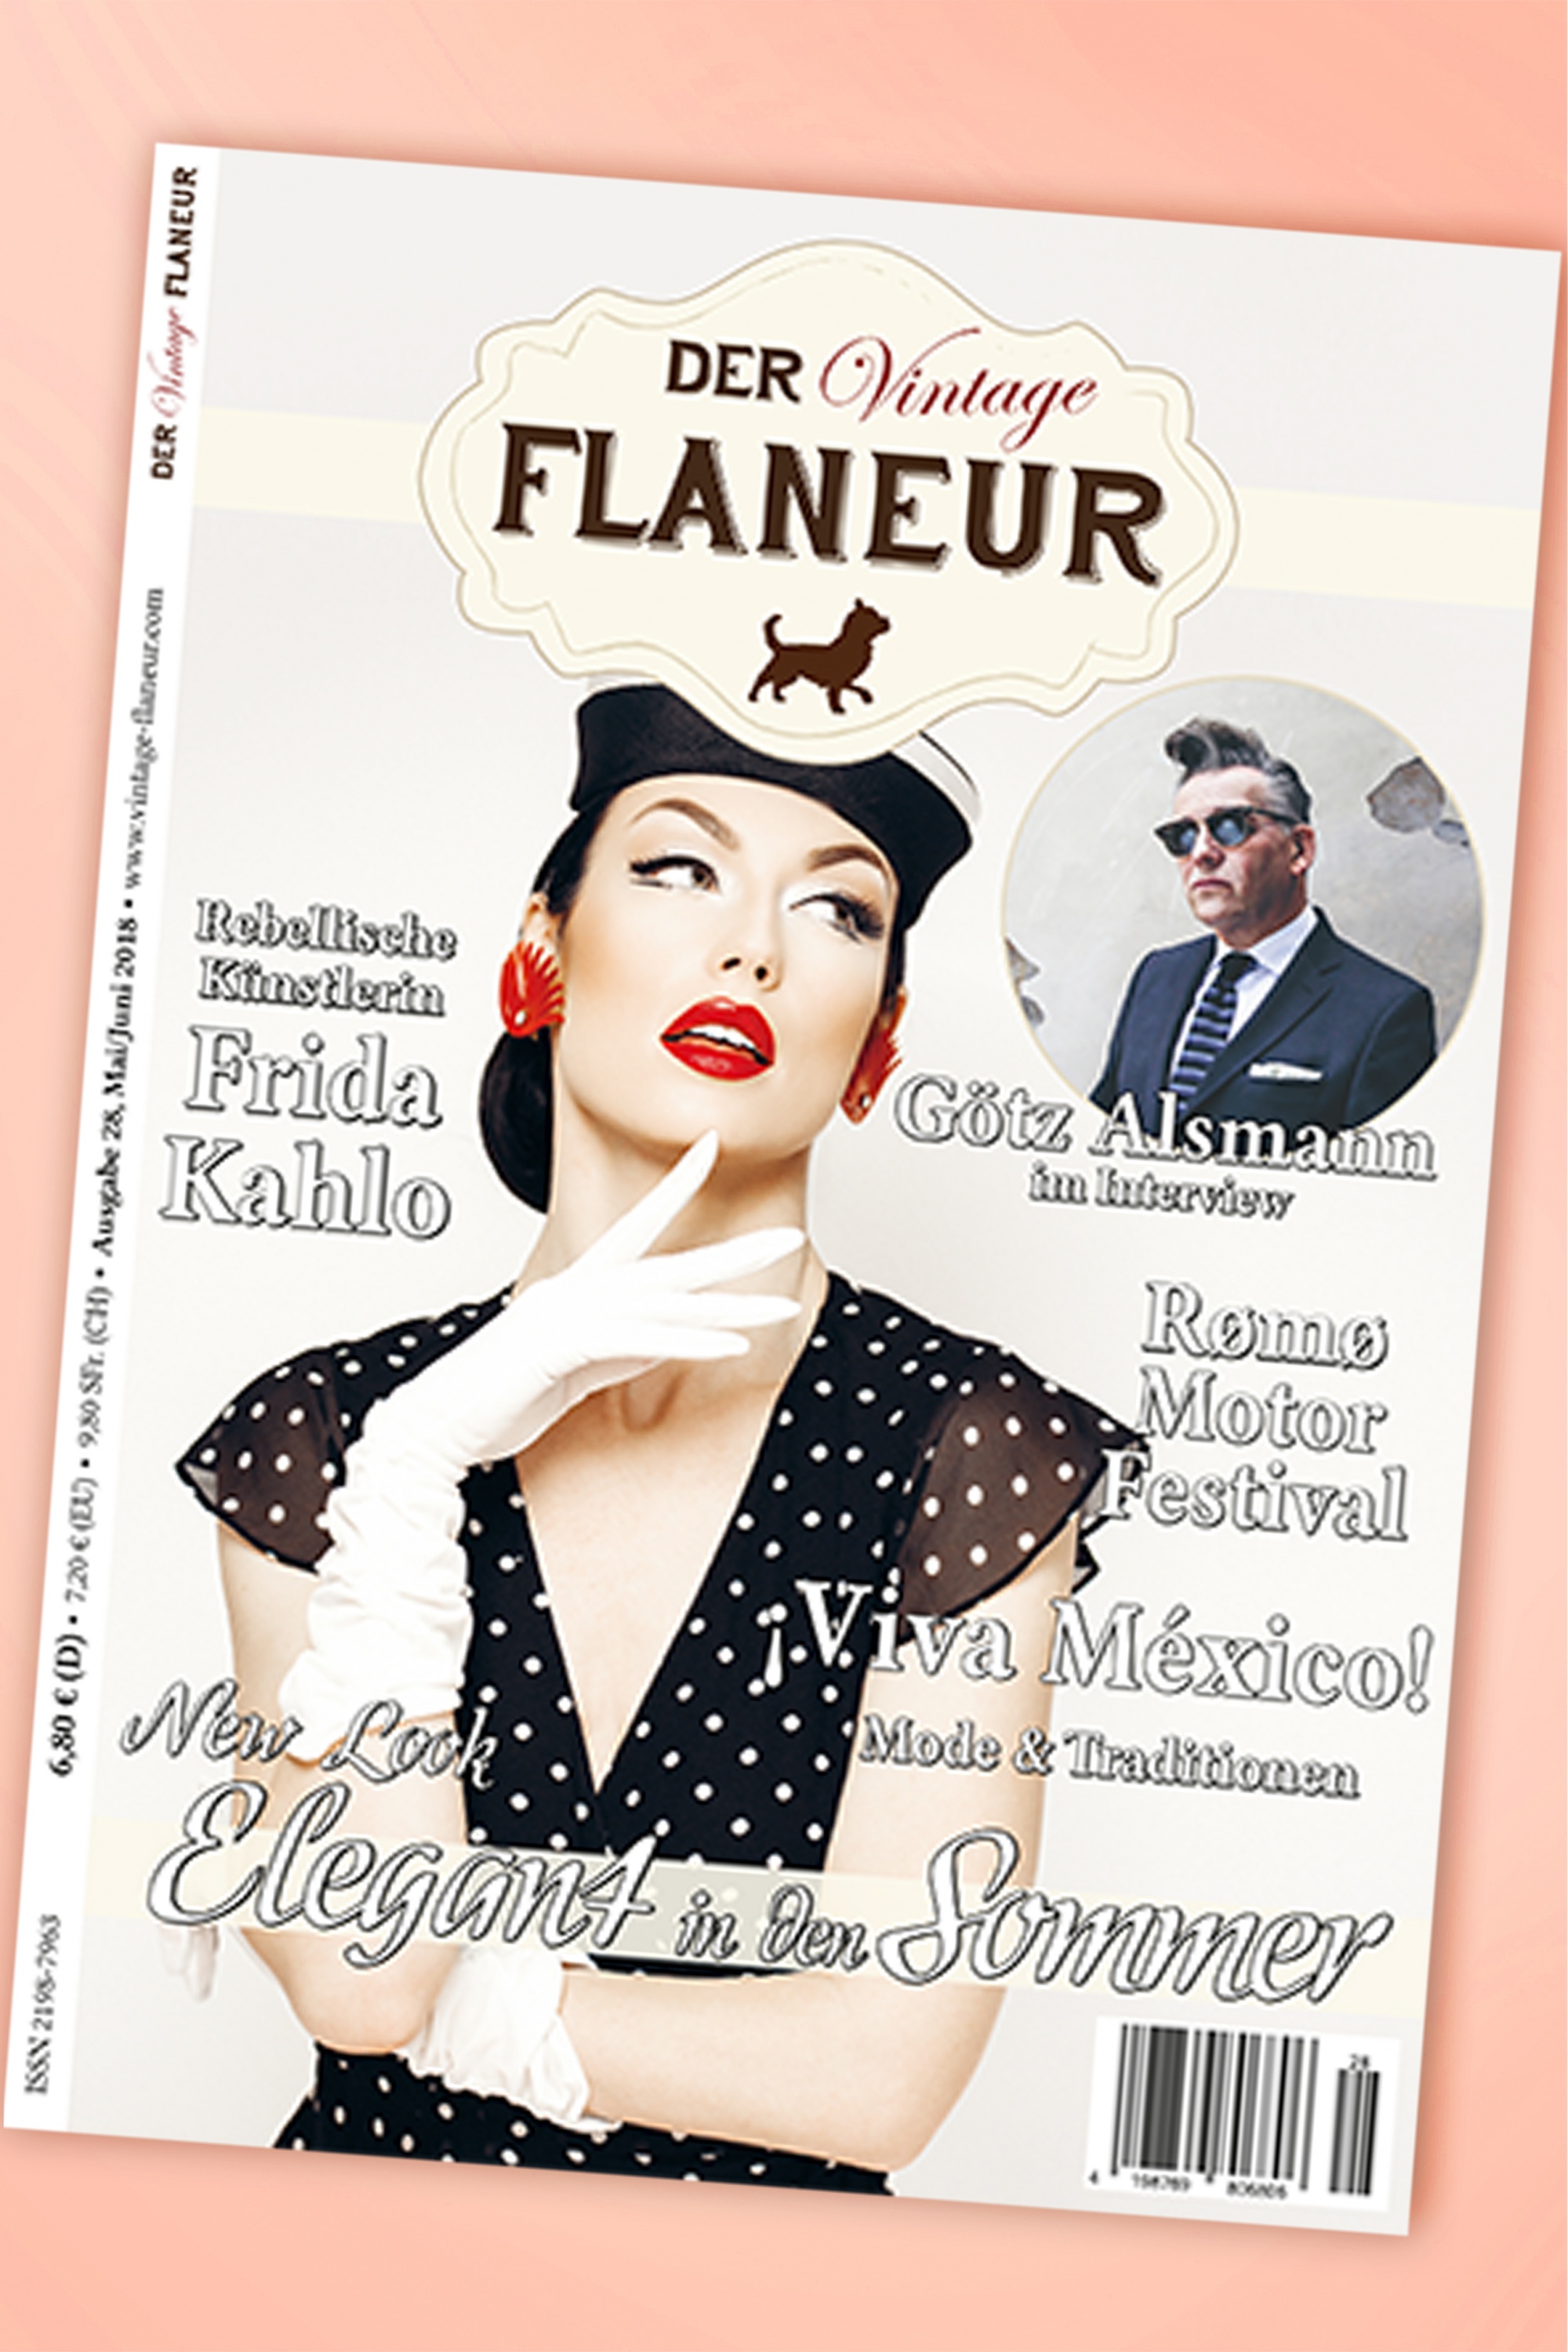 Der Vintage Flaneur - Der Vintage Flaneur Uitgegeven op 28, 2018